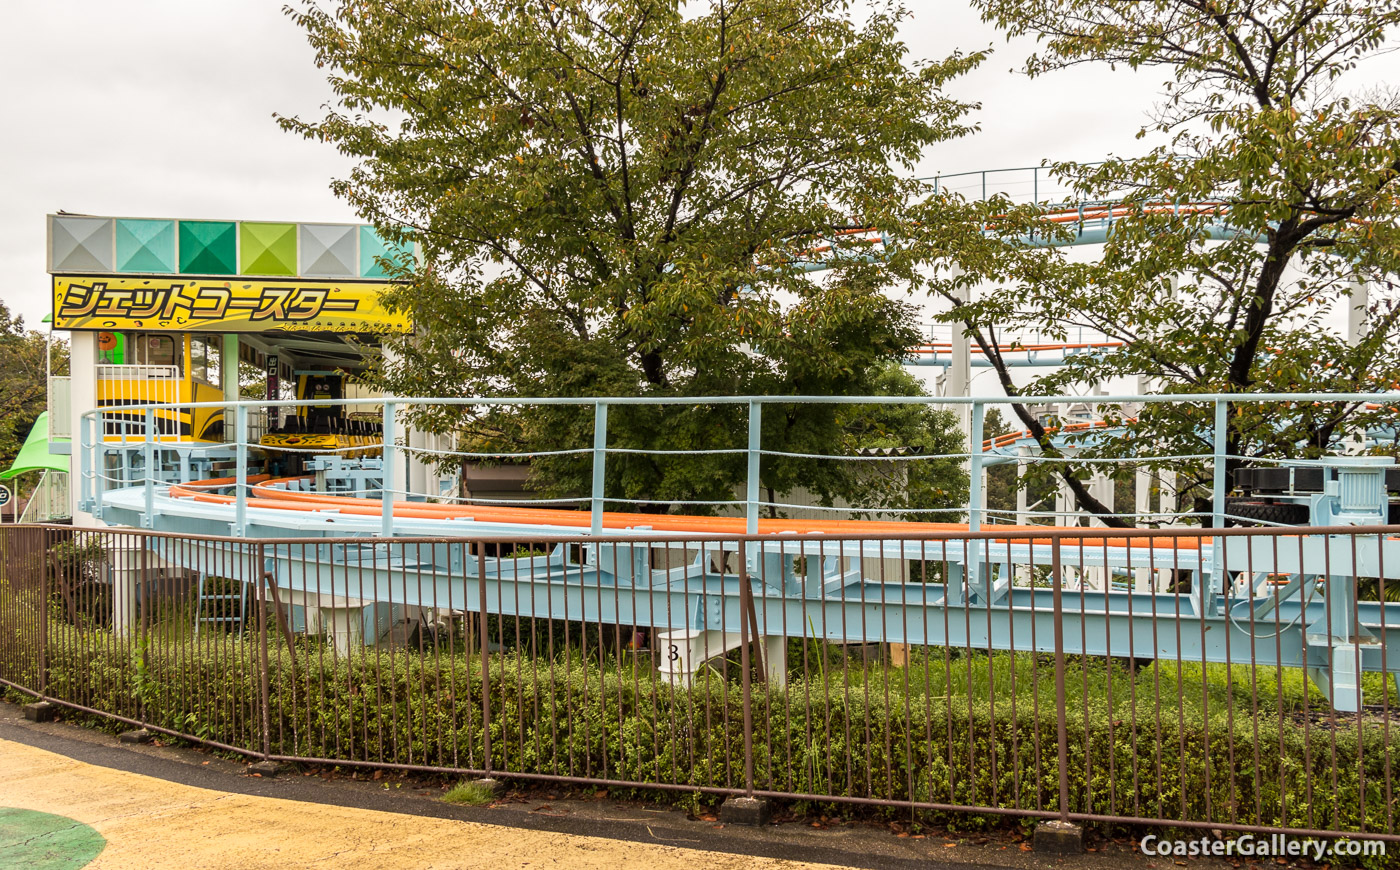  ジェットコースタ - Jet Coaster at the Higashiyama Zoo and Botanical Gardens